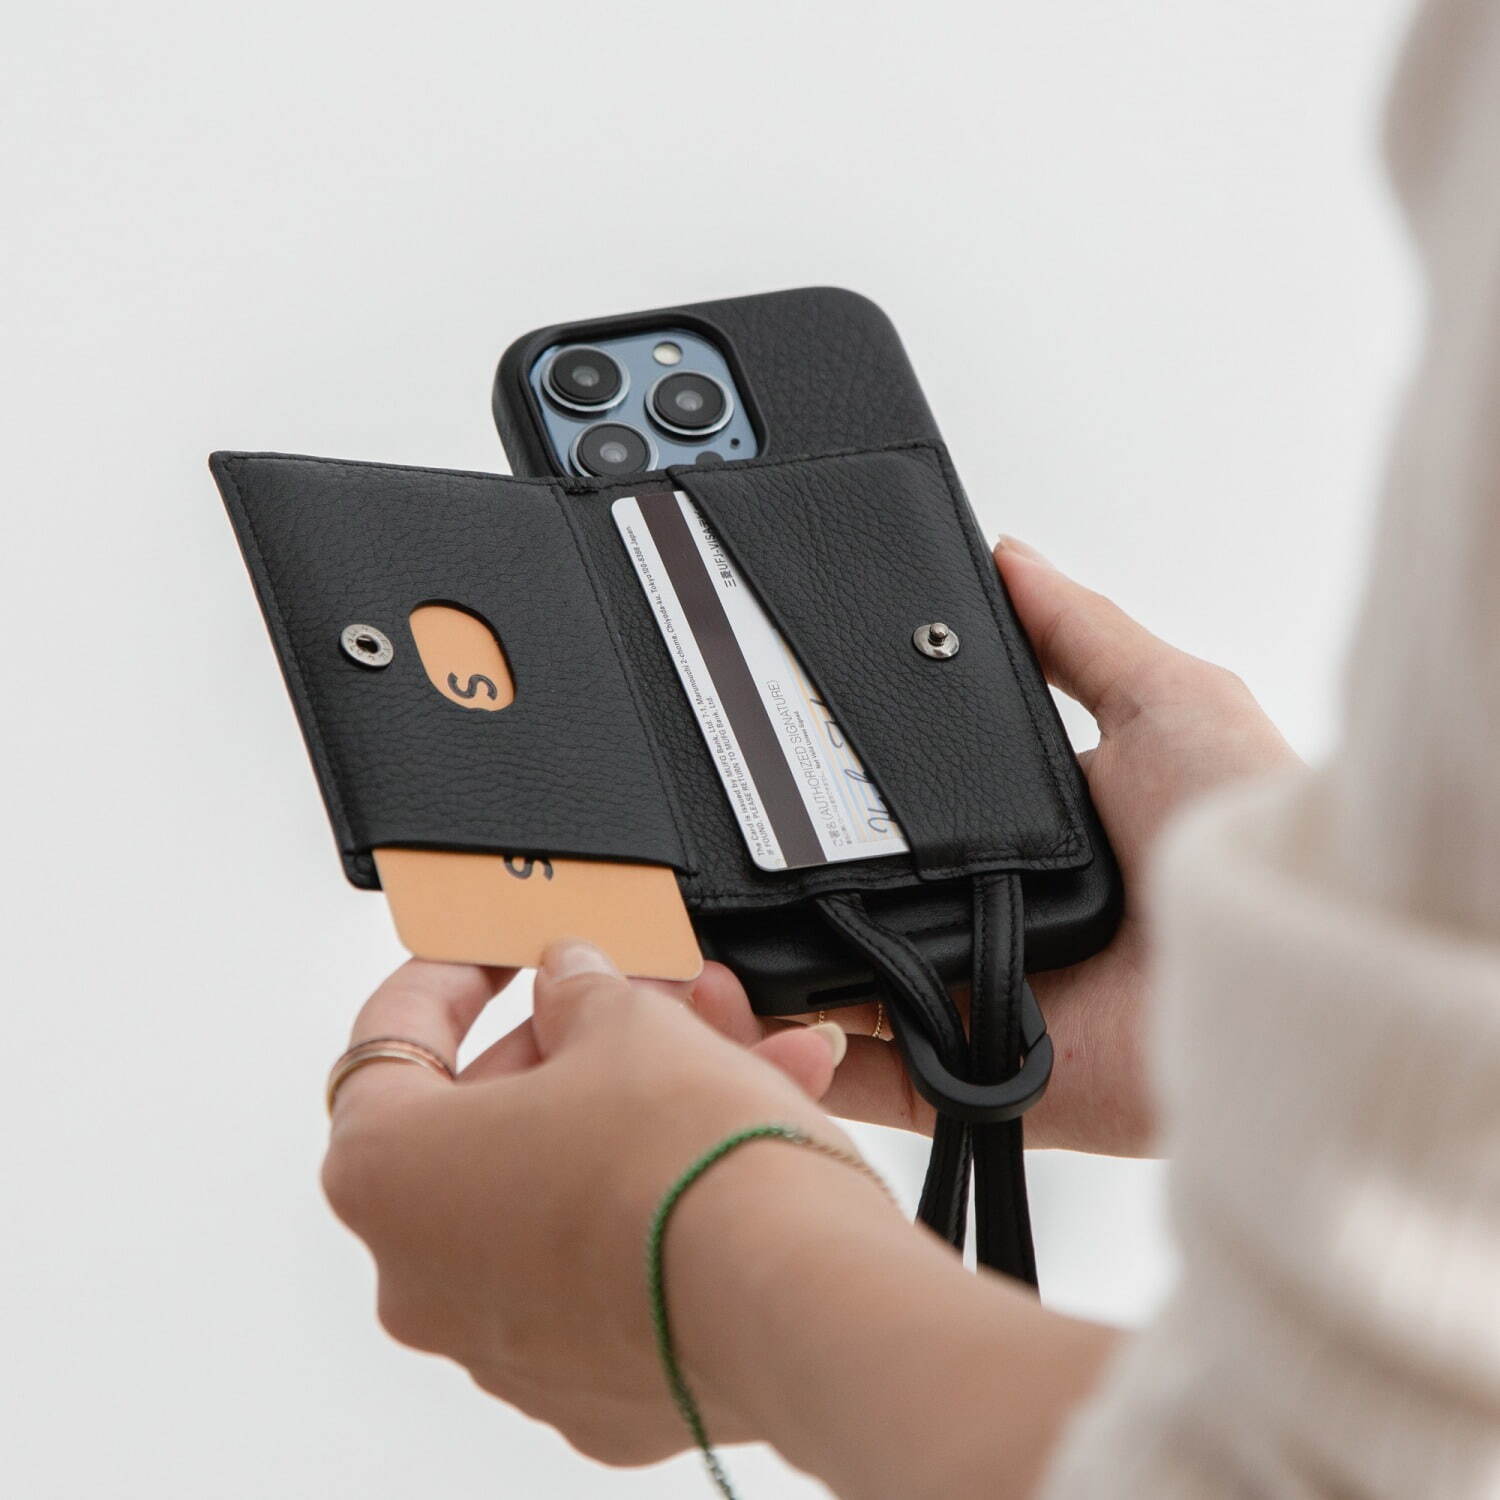 「アジャスタブルレザーストラップ + iPhone ケースセット - カードケース」26,800円